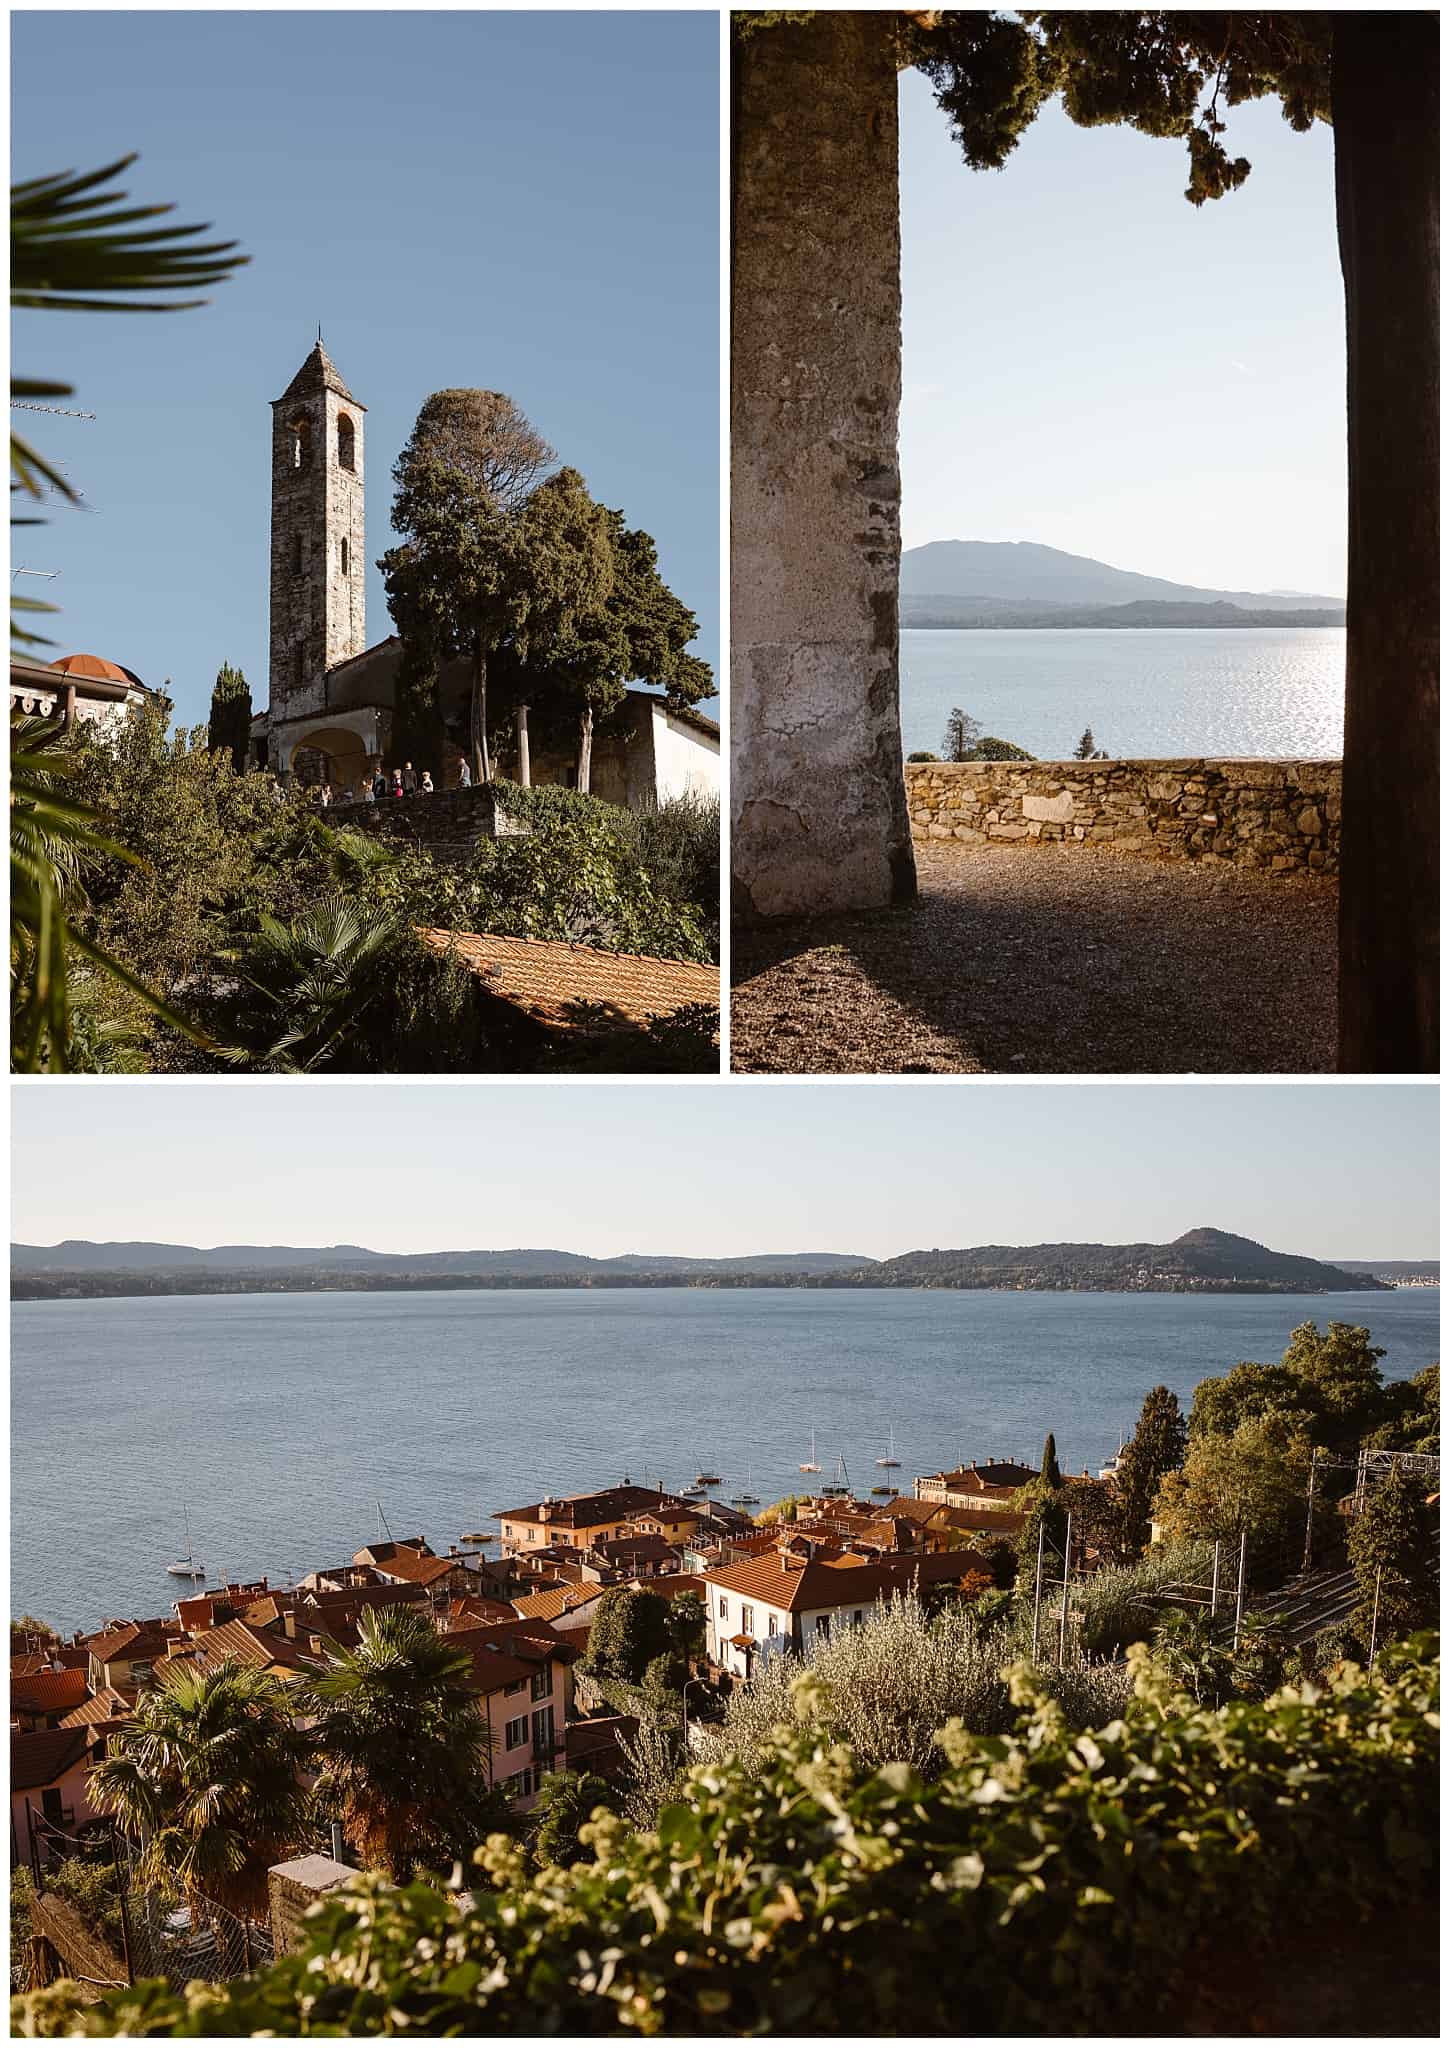 views of Lake Maggiore